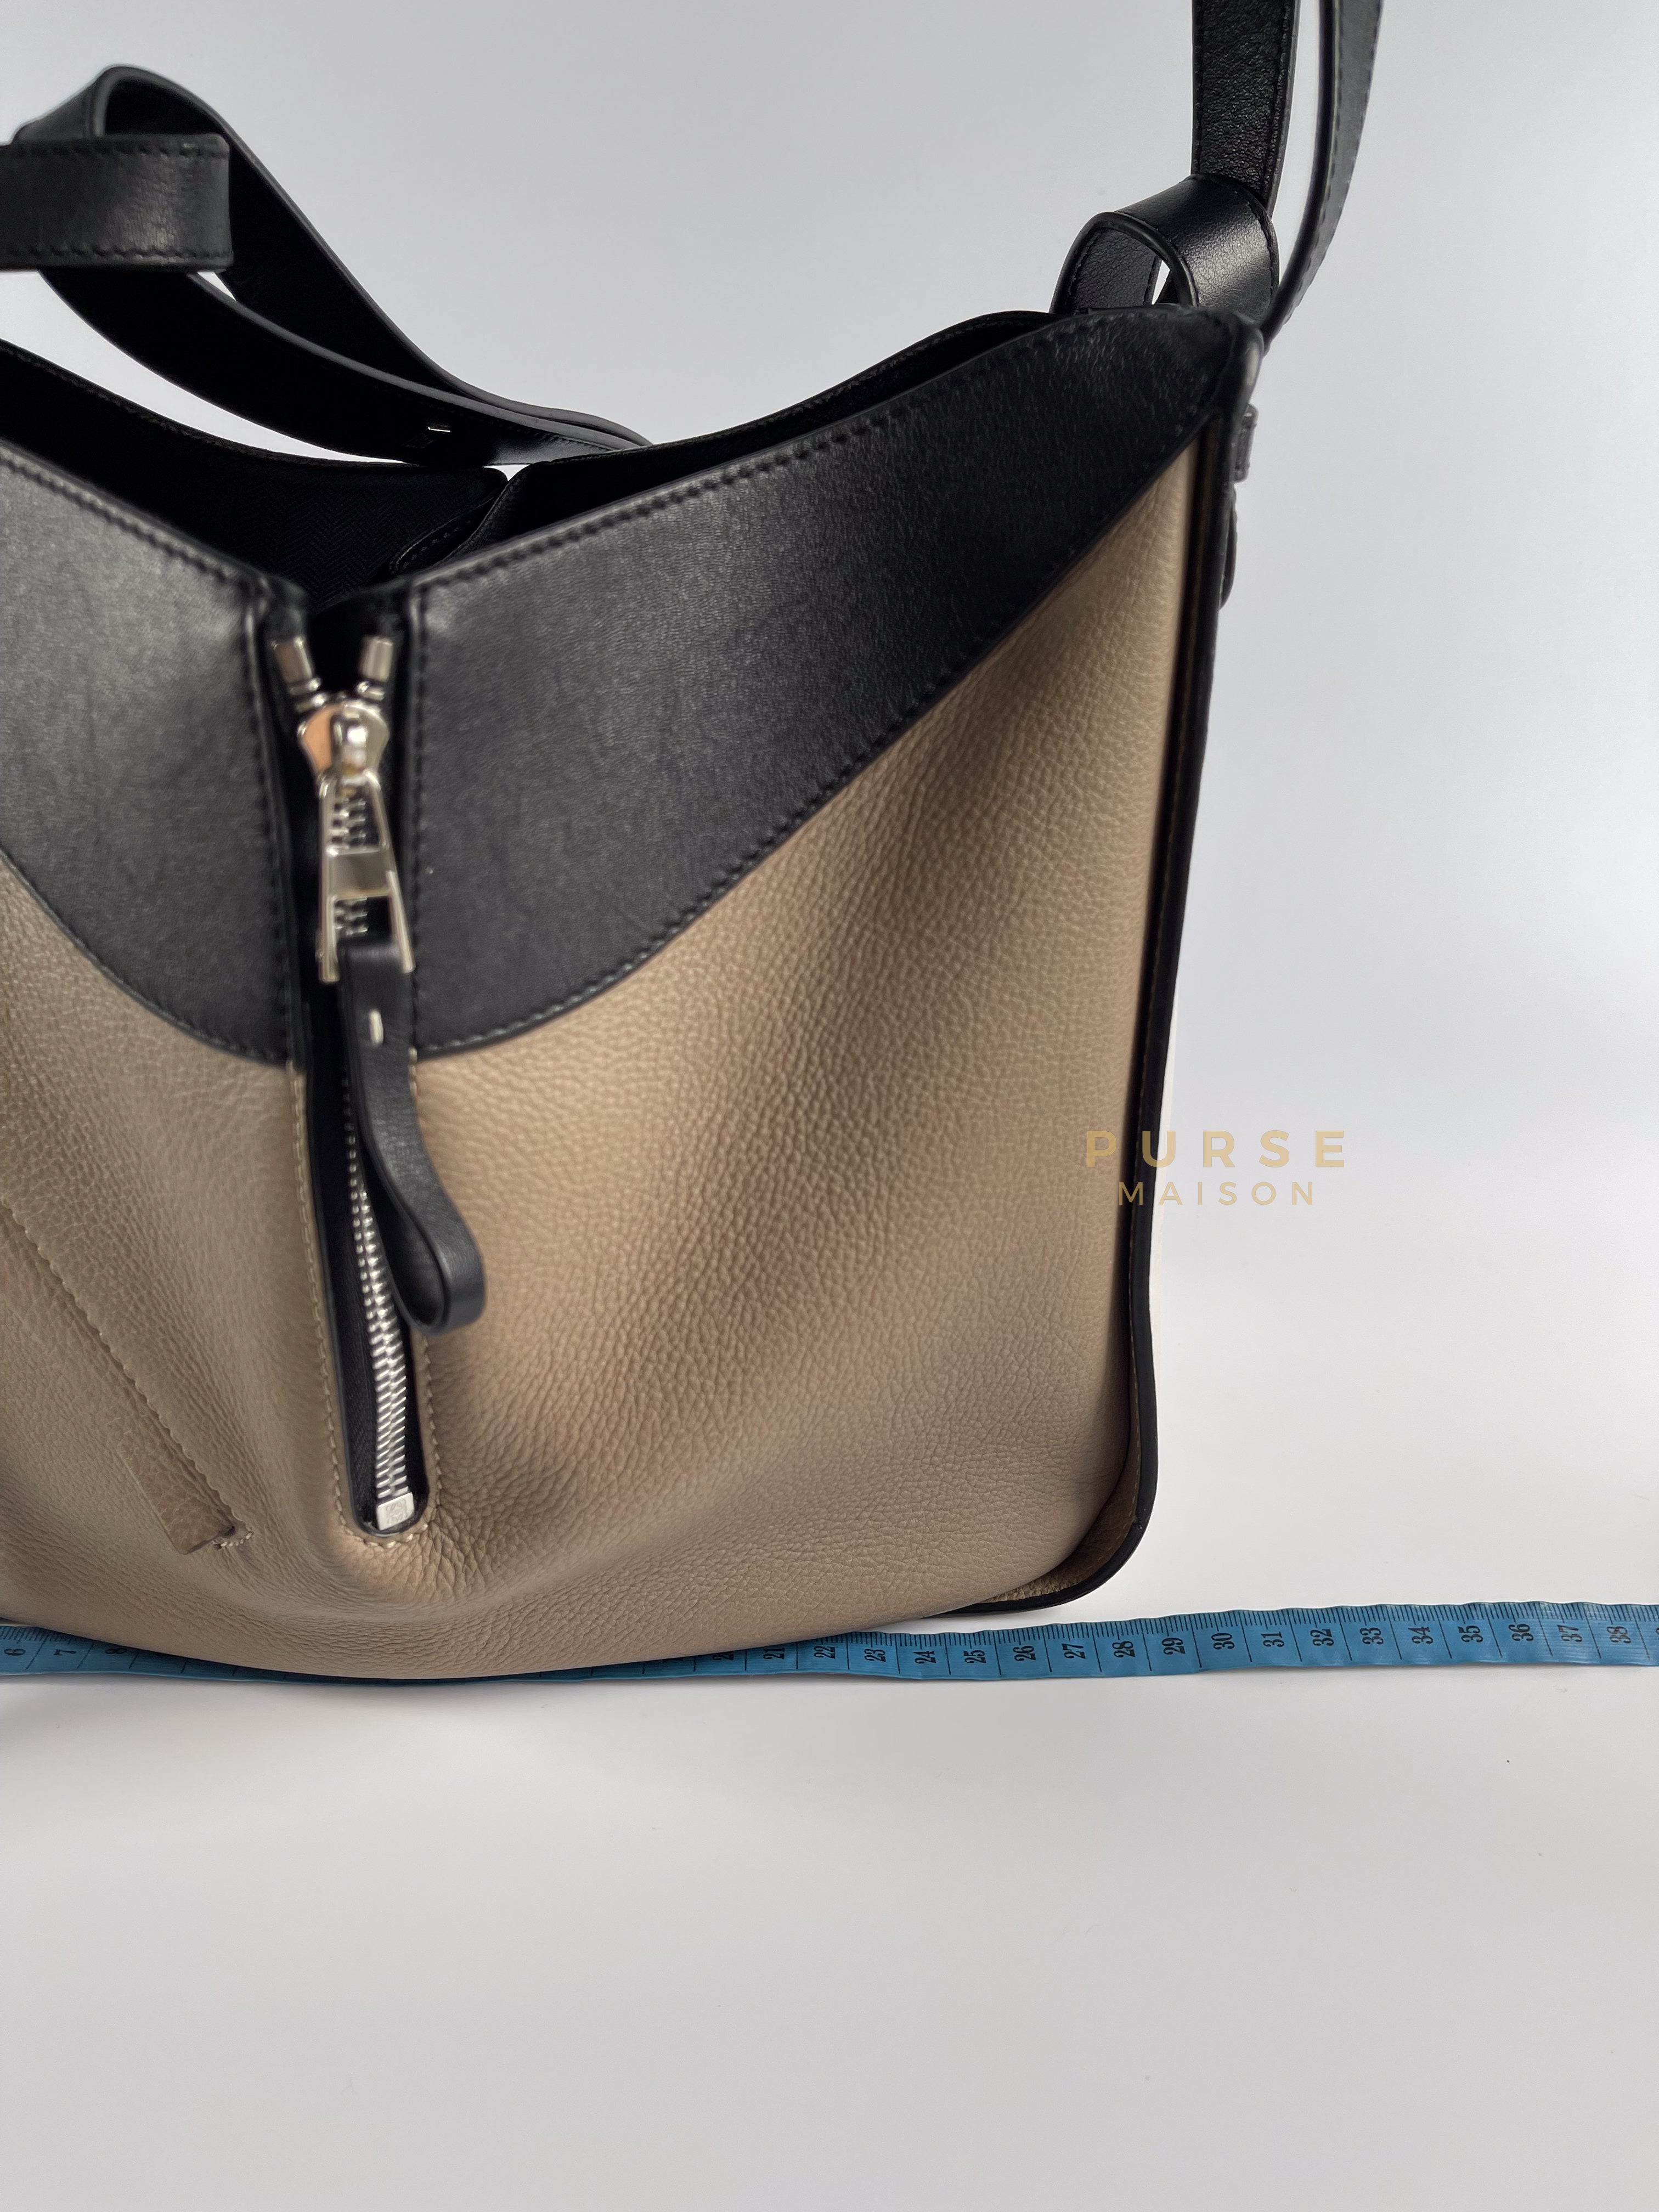 Hammock Small Shoulder Bag Tricolor | Purse Maison Luxury Bags Shop